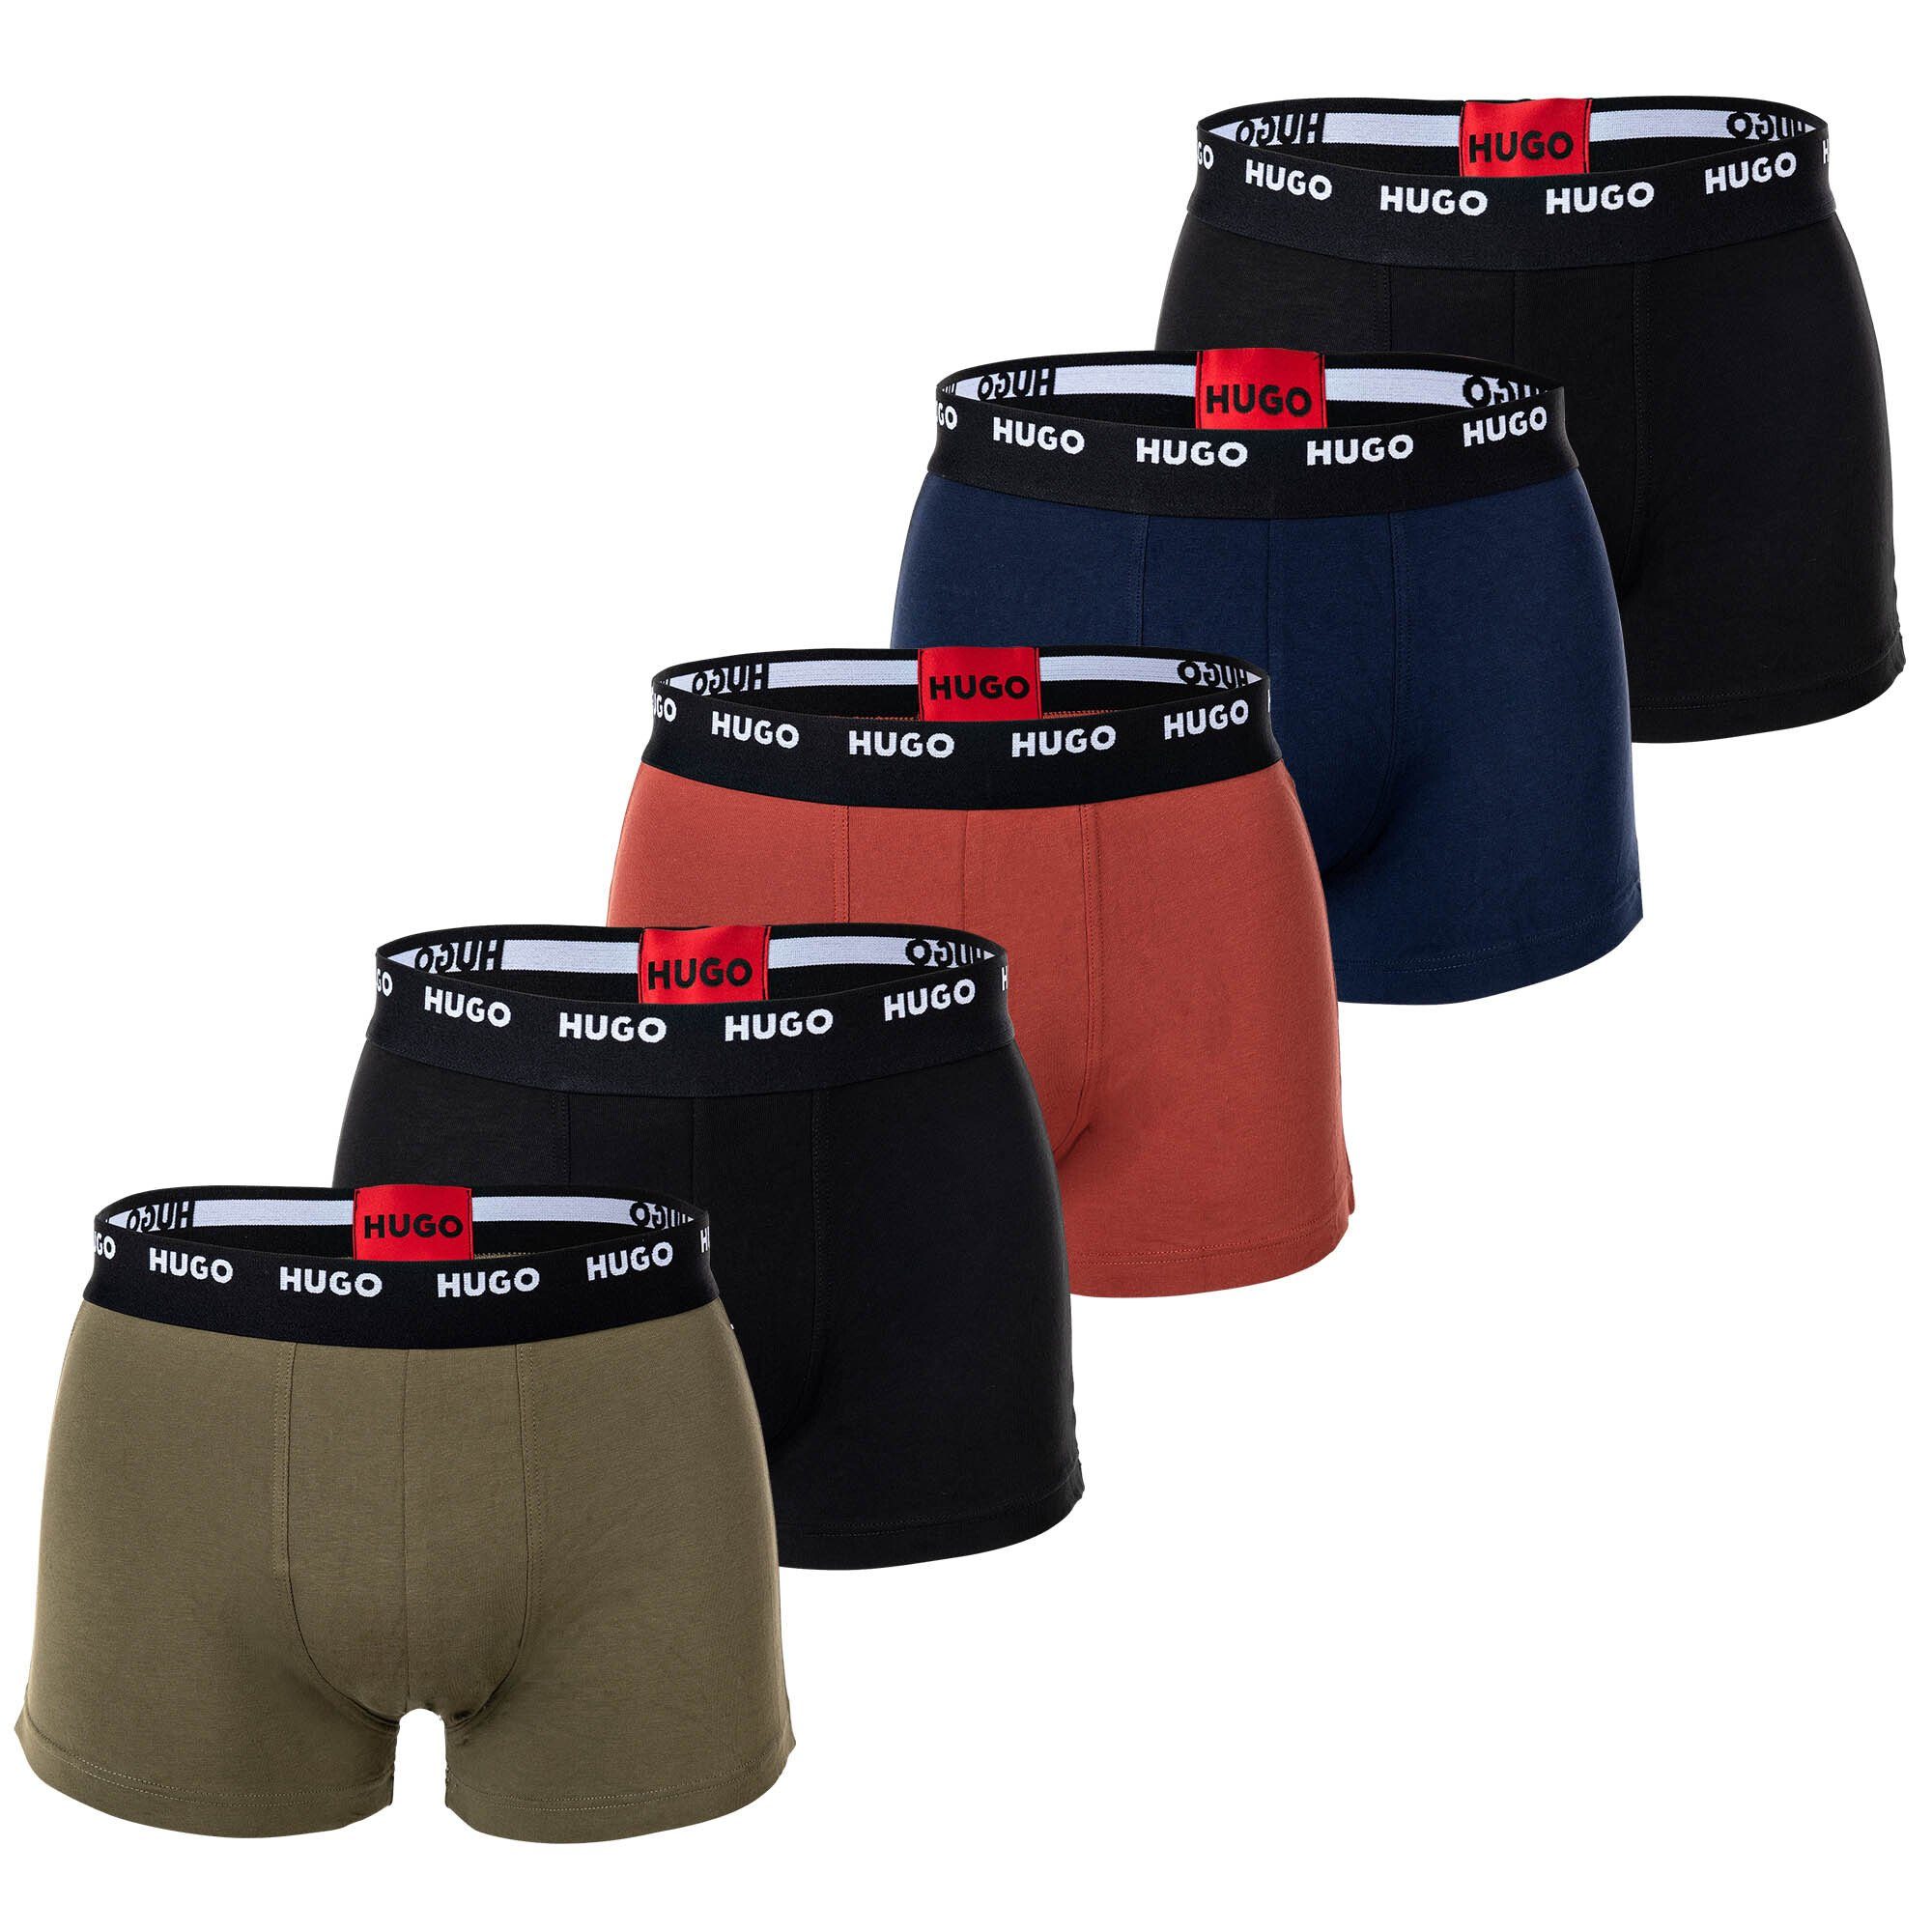 HUGO Boxer Herren Boxer Shorts, 5er Pack - Trunks Five Pack Schwarz/Rot/Grün/Blau